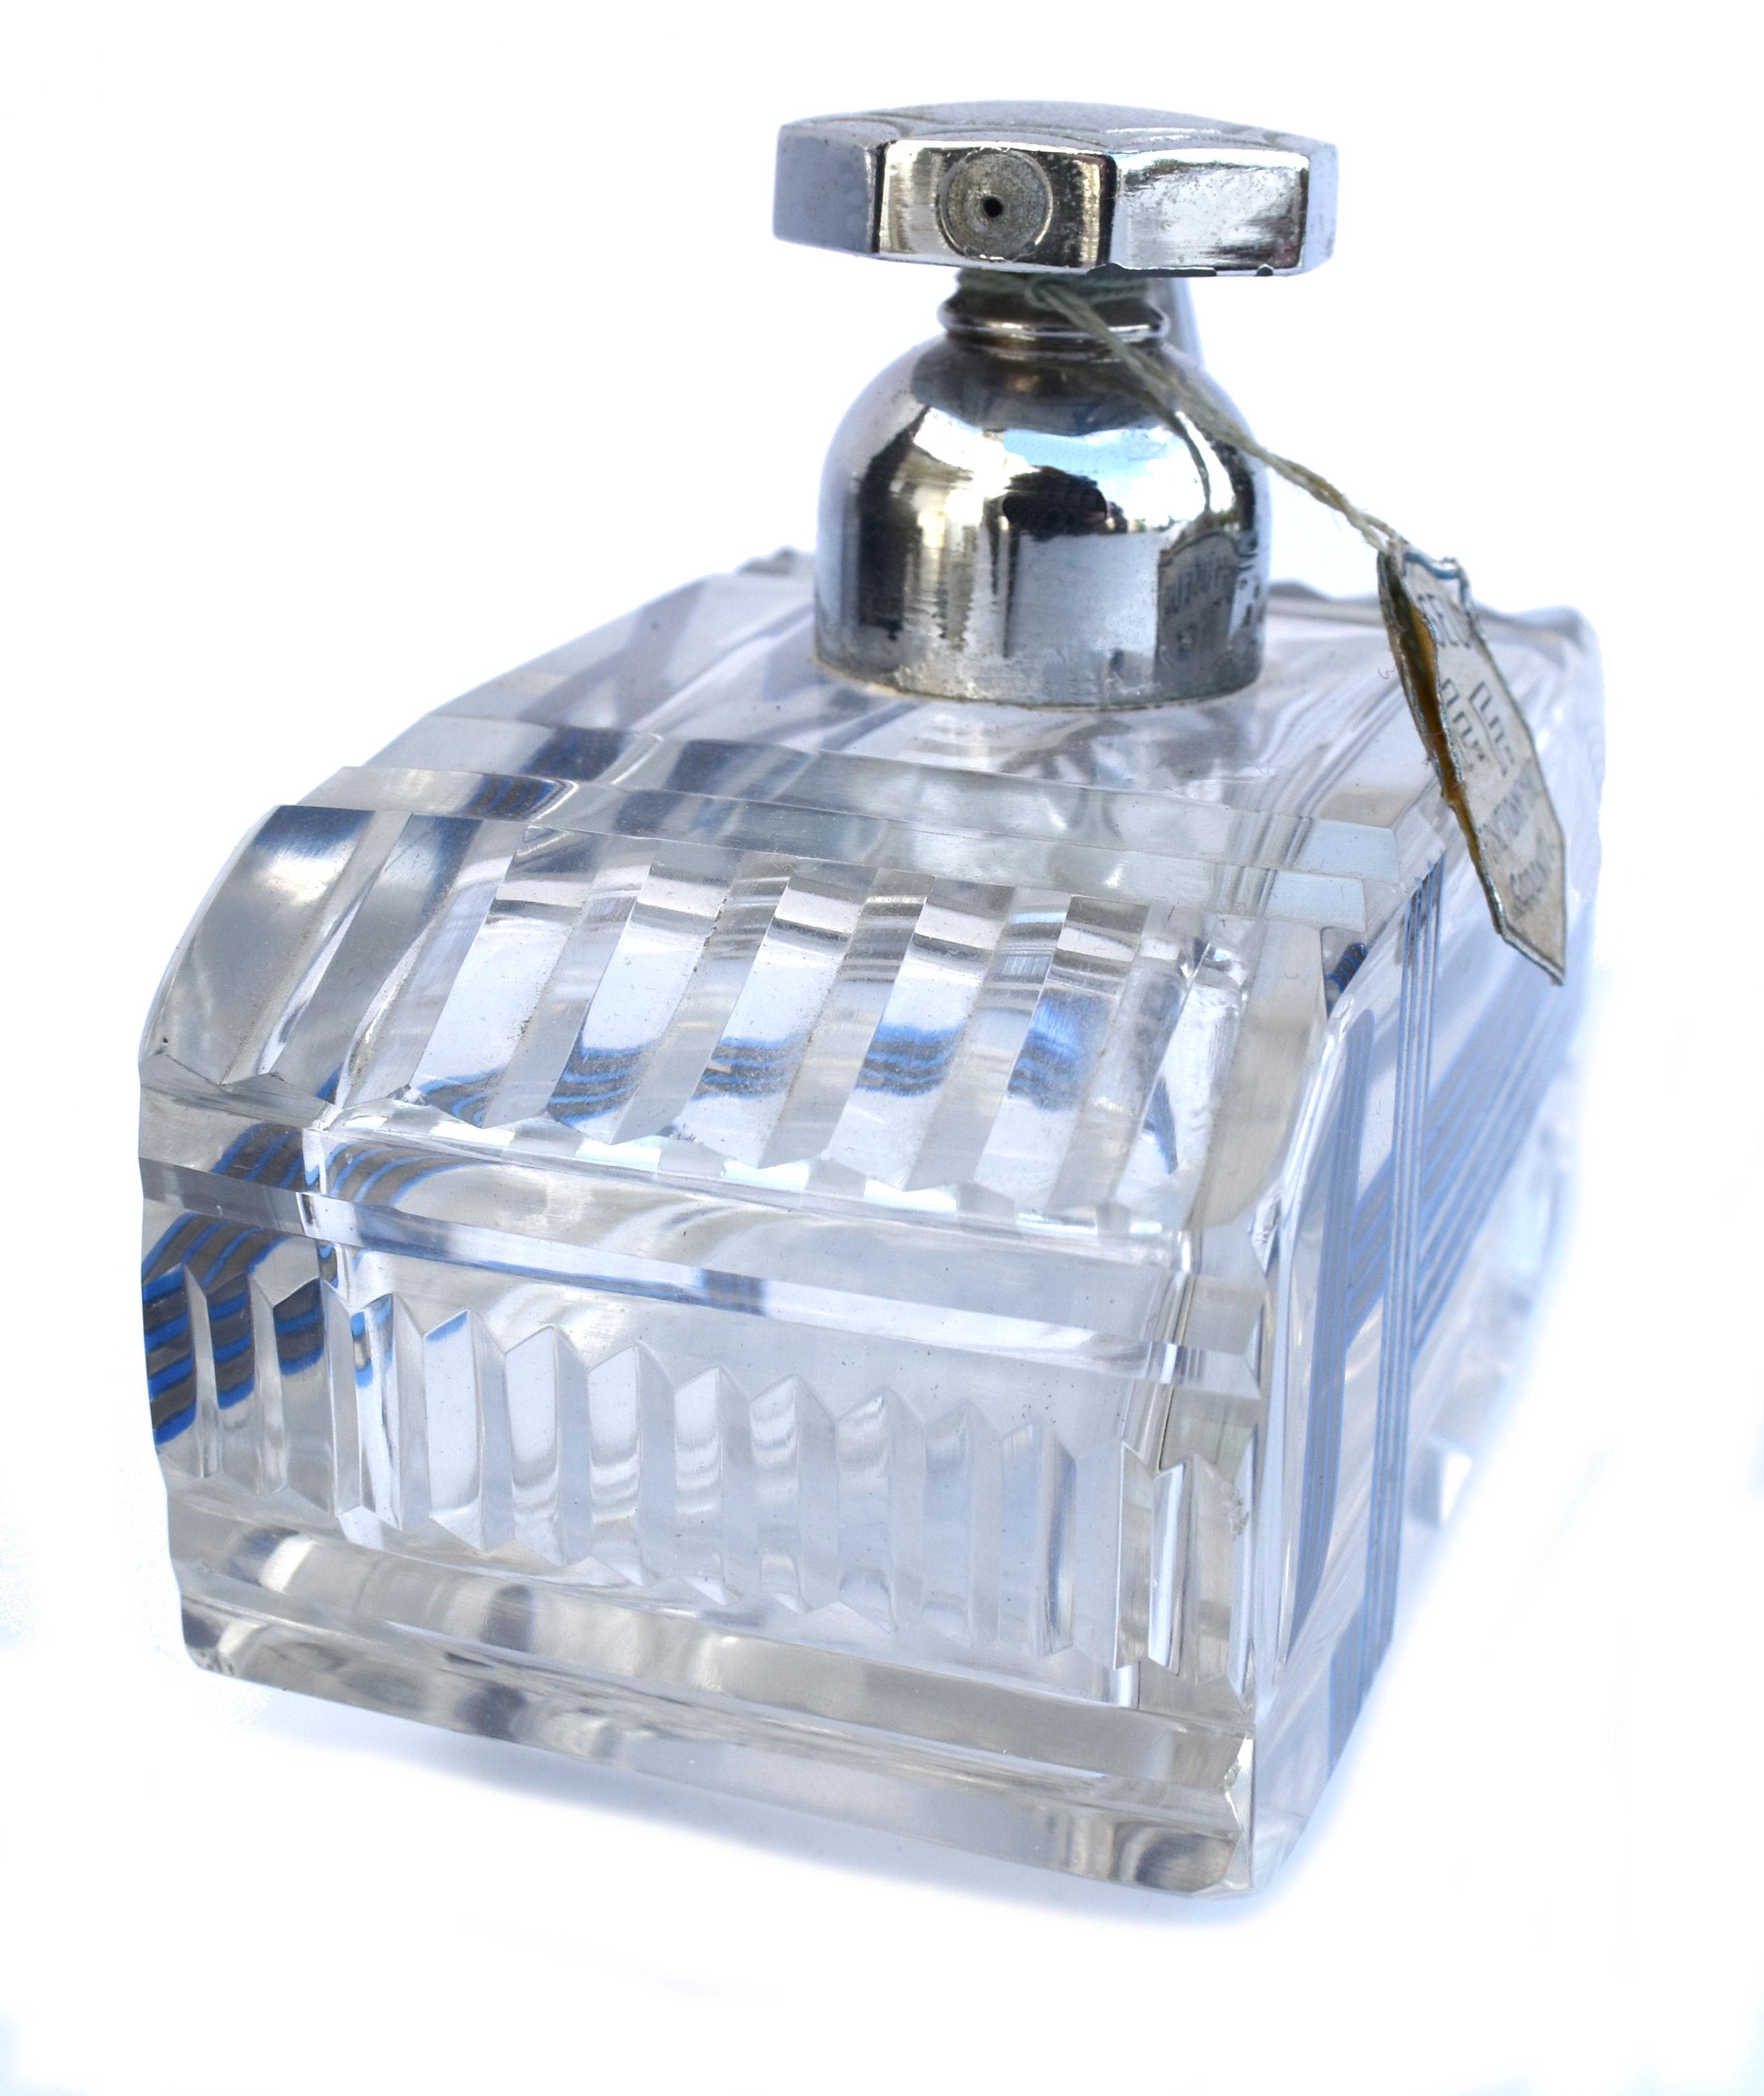 1930 perfume bottles